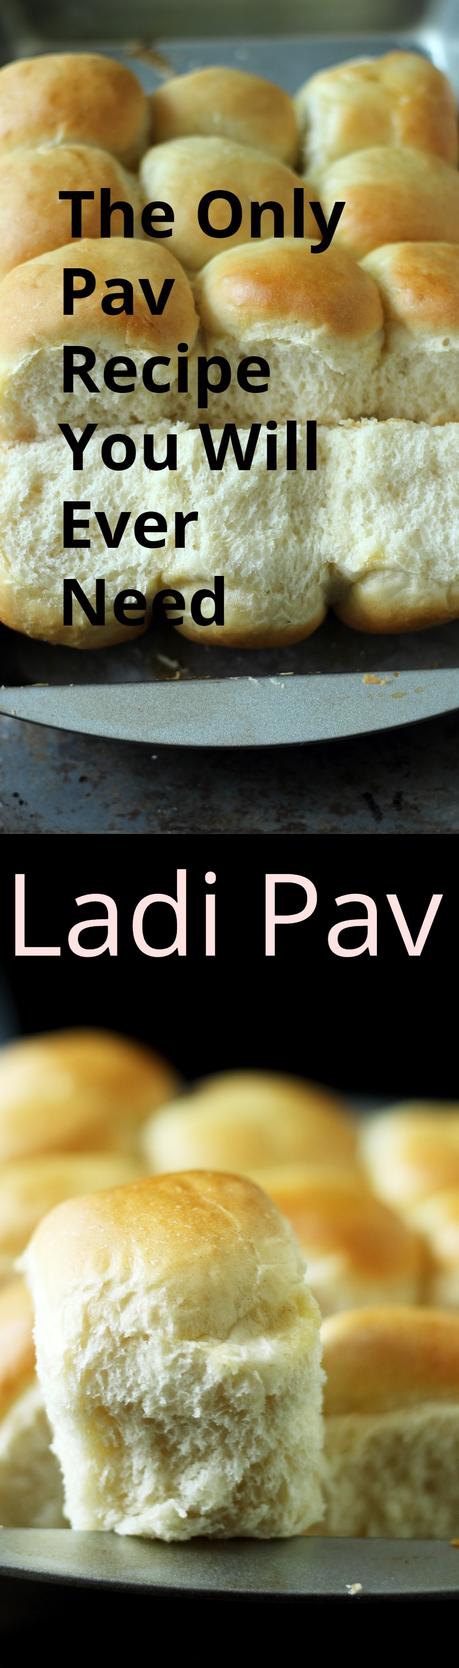 Ladi Pav | Pav Recipe for Pav Bhaji, Vada Pav, Dabeli & Much More |Easy and For Beginners | The Only Pav Recipe You Will Ever Need